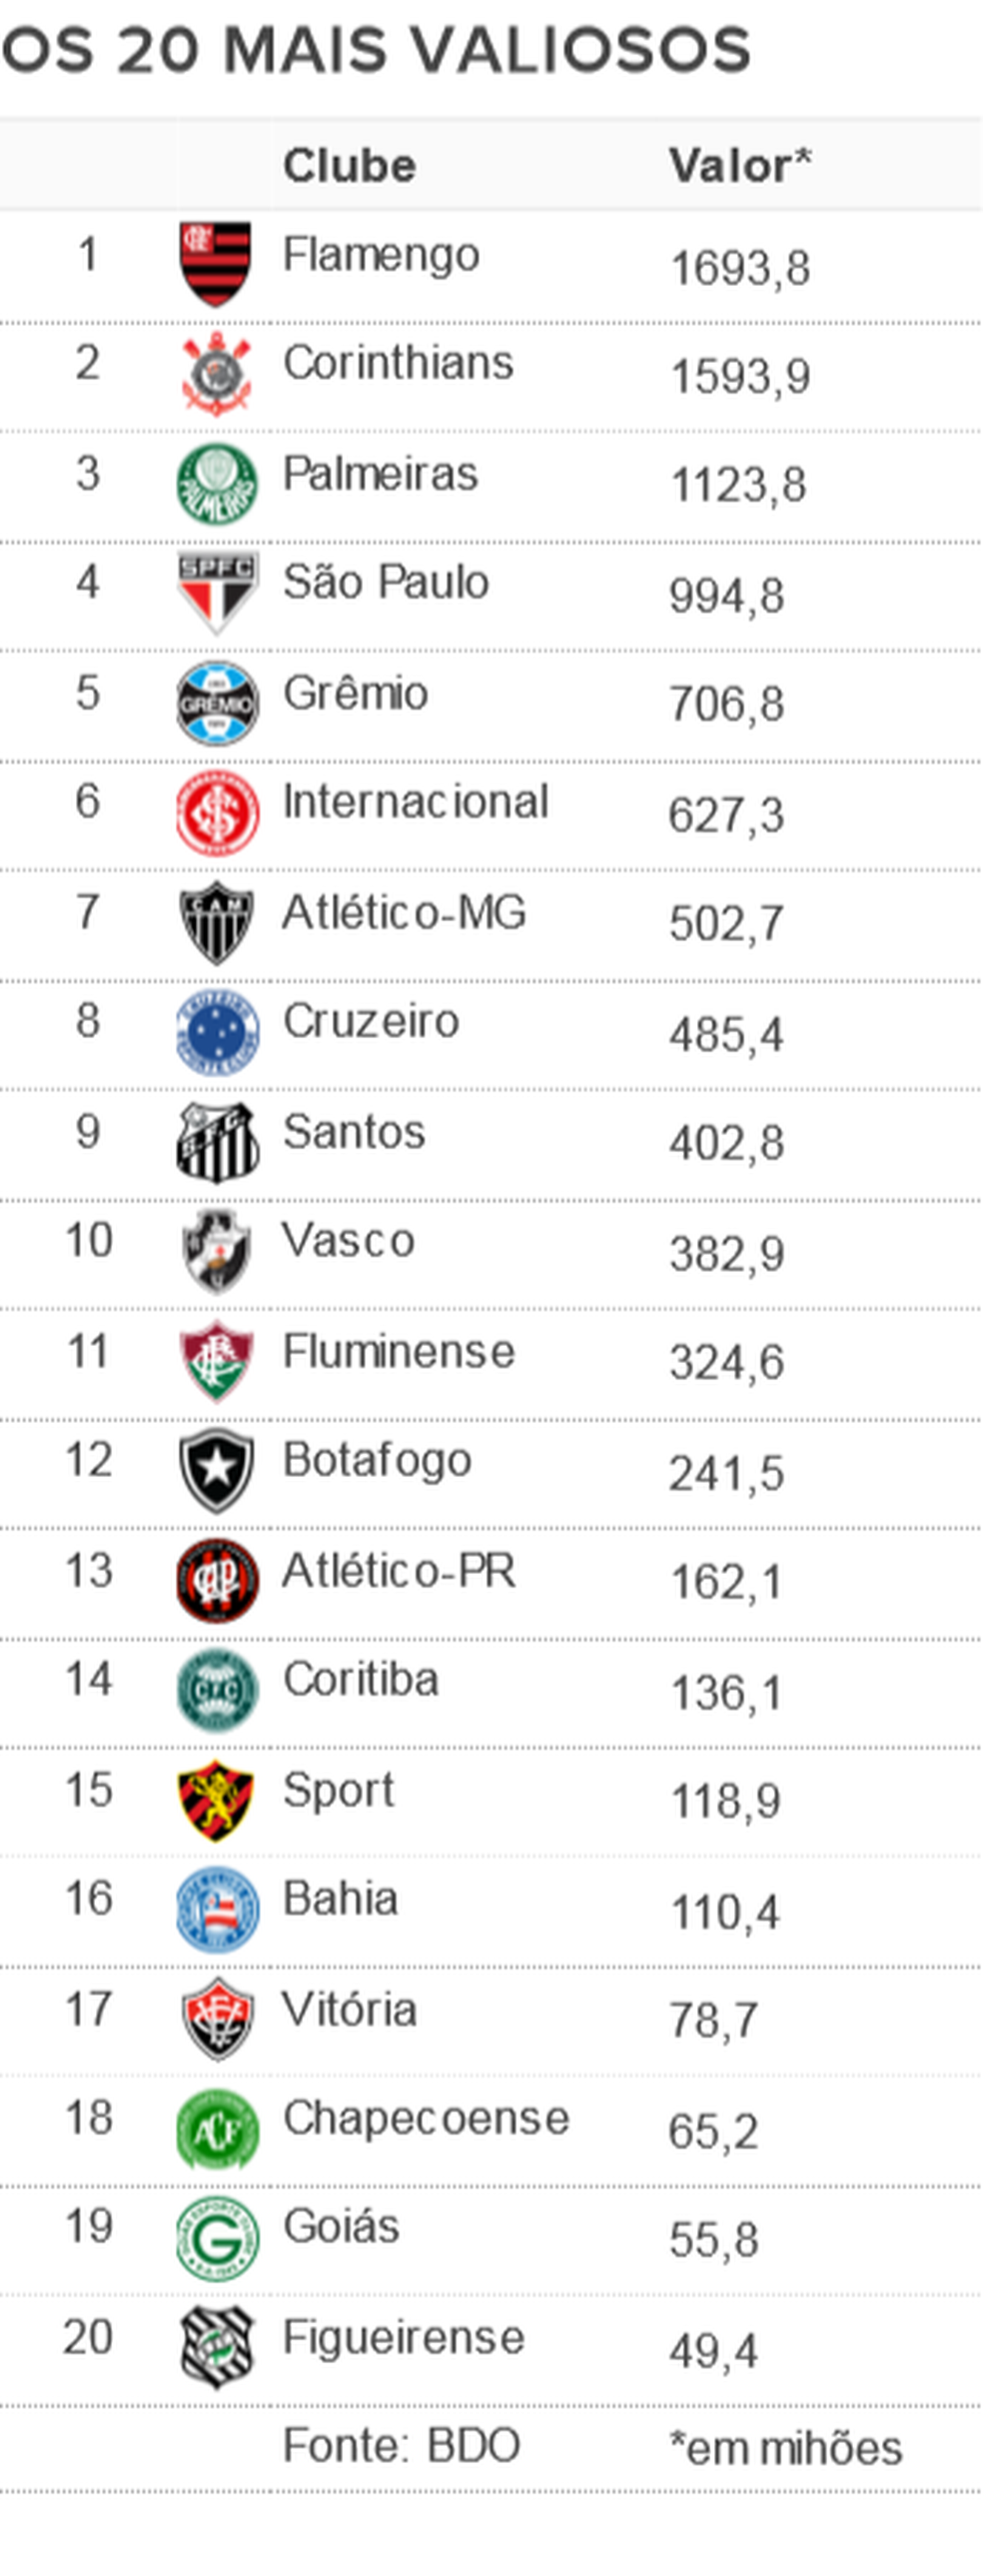 Os 20 clubes mais valiosos do futebol brasileiro de acordo com a consultoria BDO  (Foto: SporTV.com)